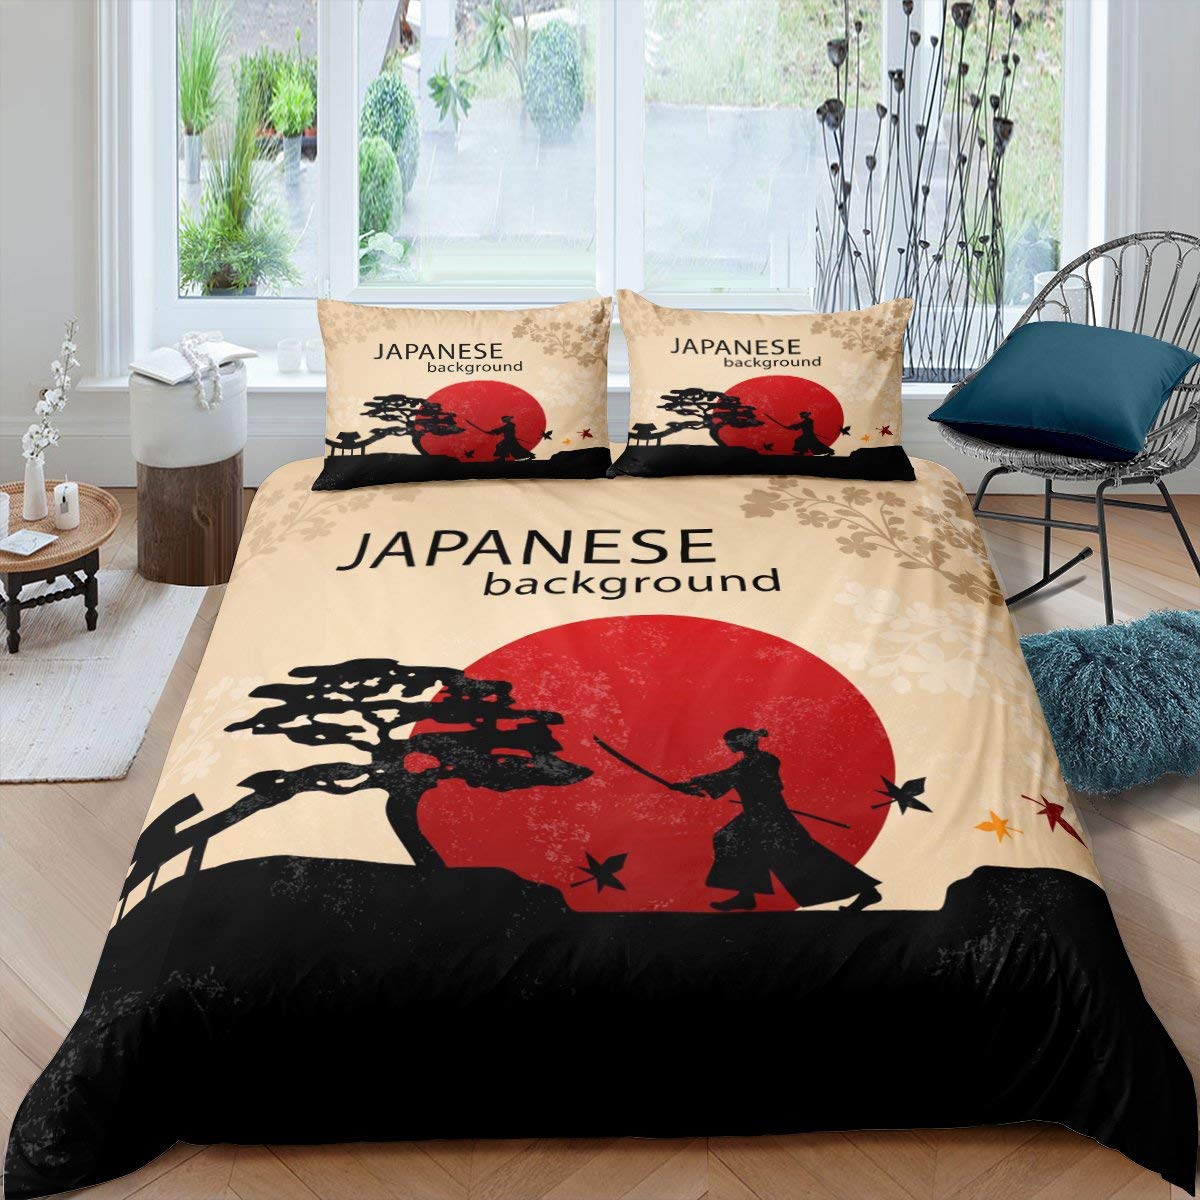 Japanese background duvet cover